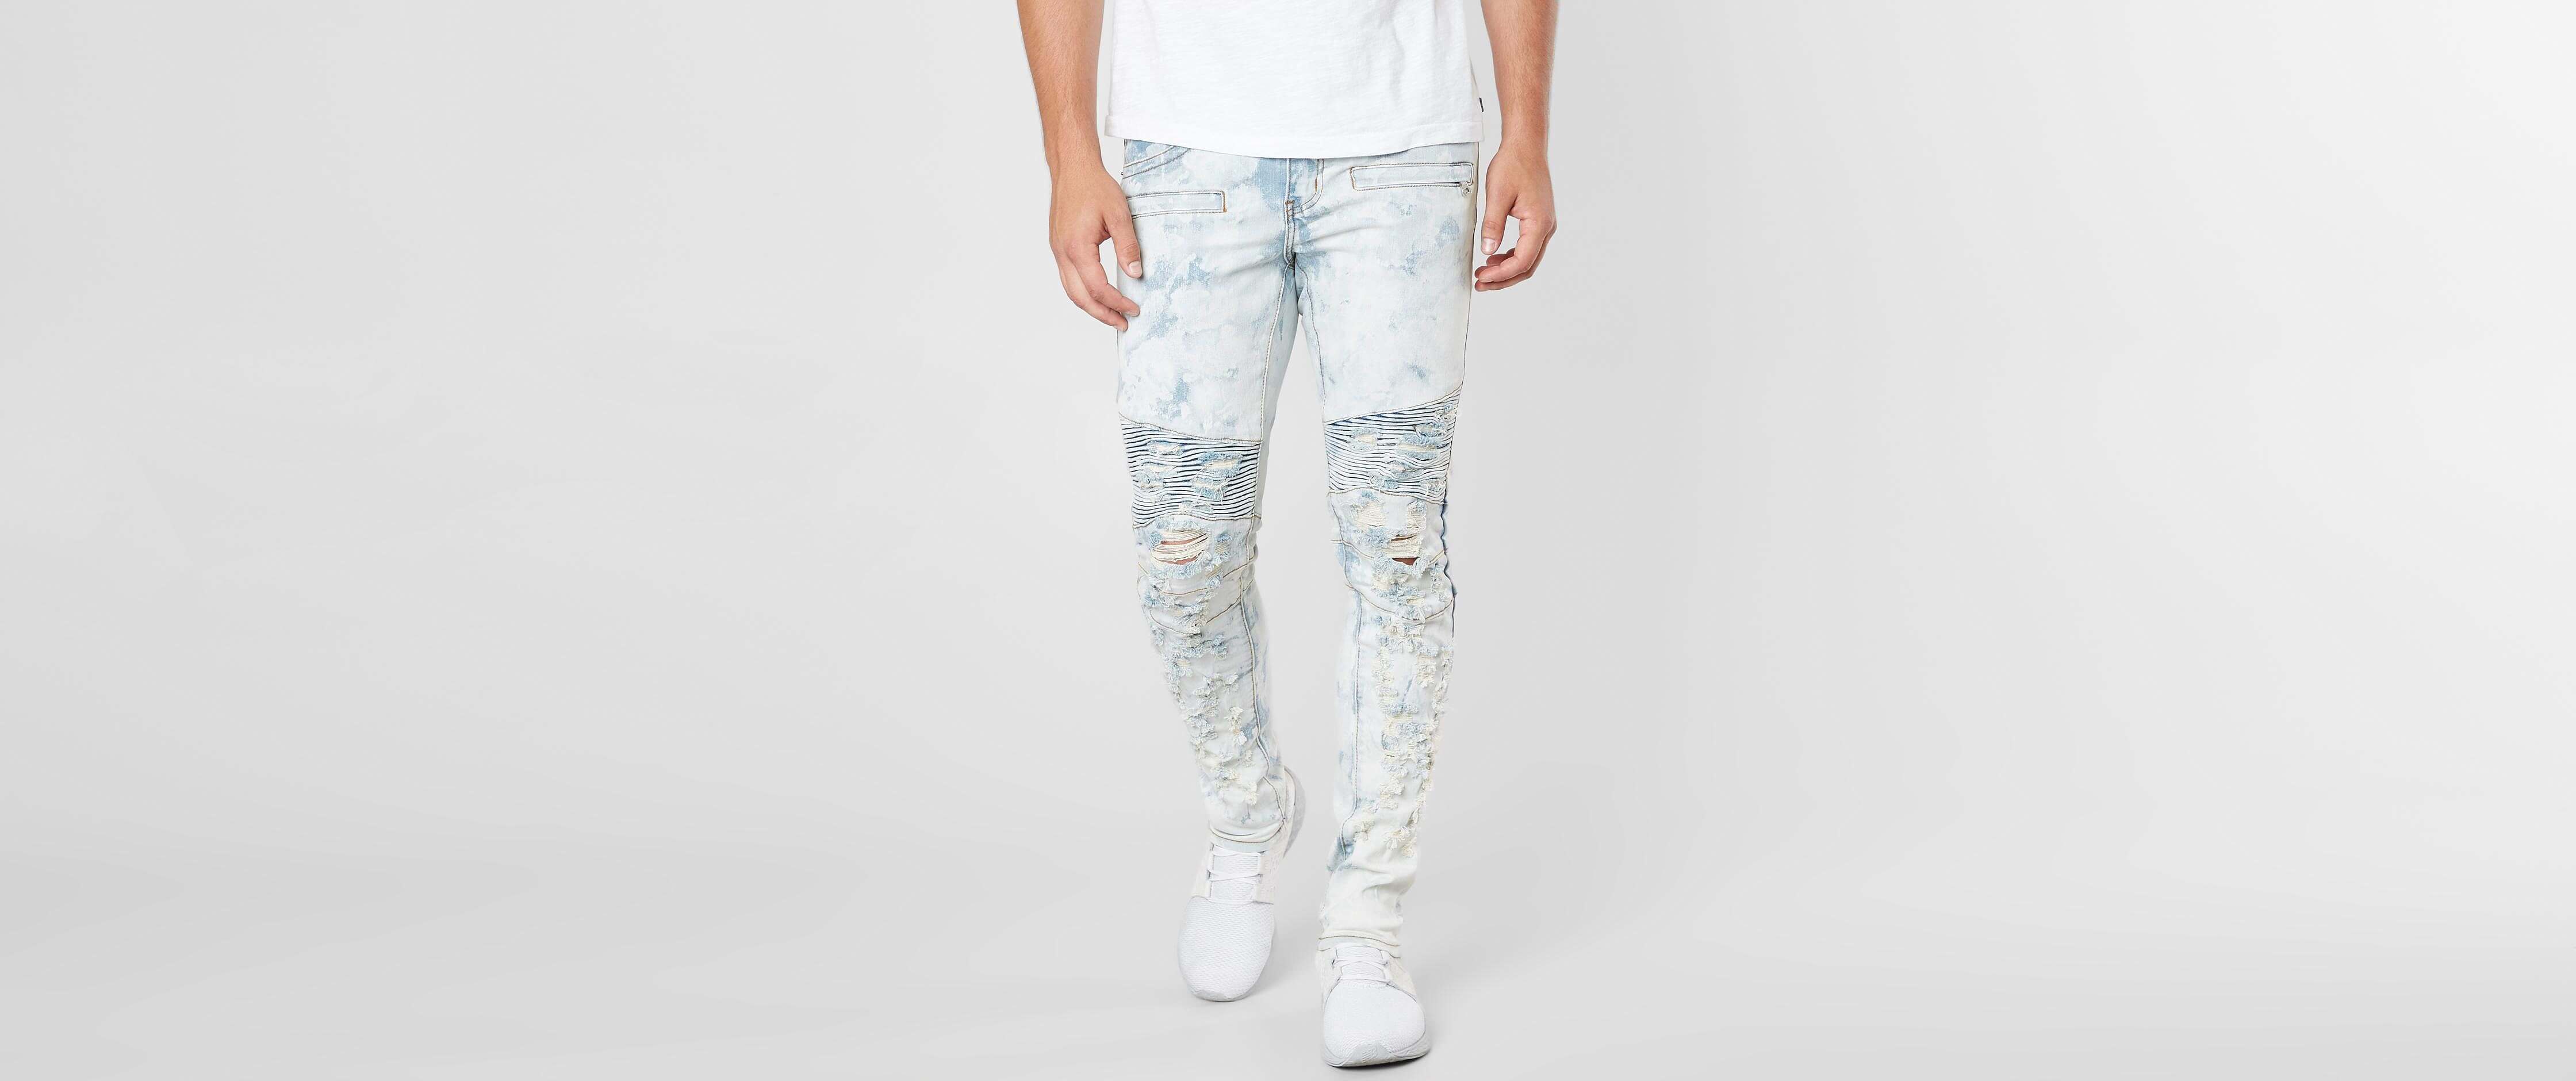 buckle skinny jeans mens